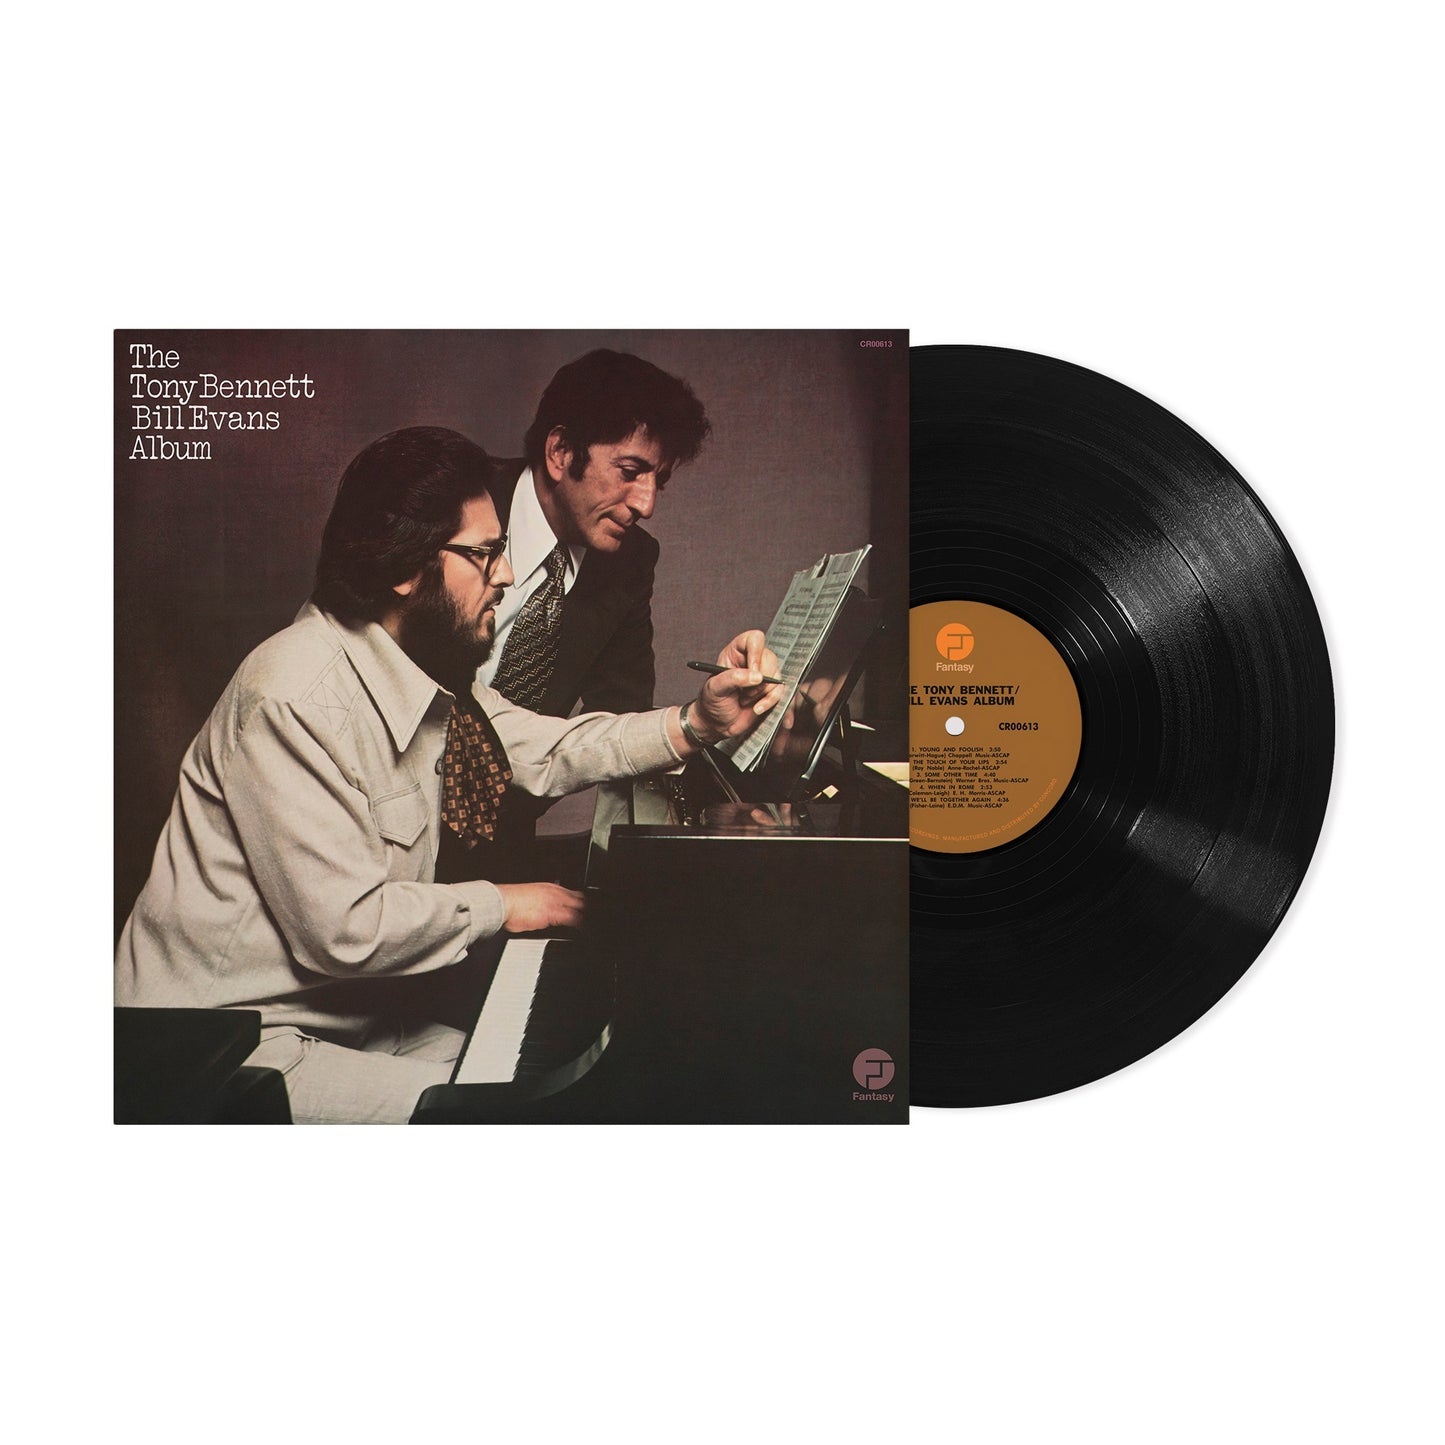 Tony Bennett & Bill Evans - The Tony Bennett Bill Evans Album - OJC LP